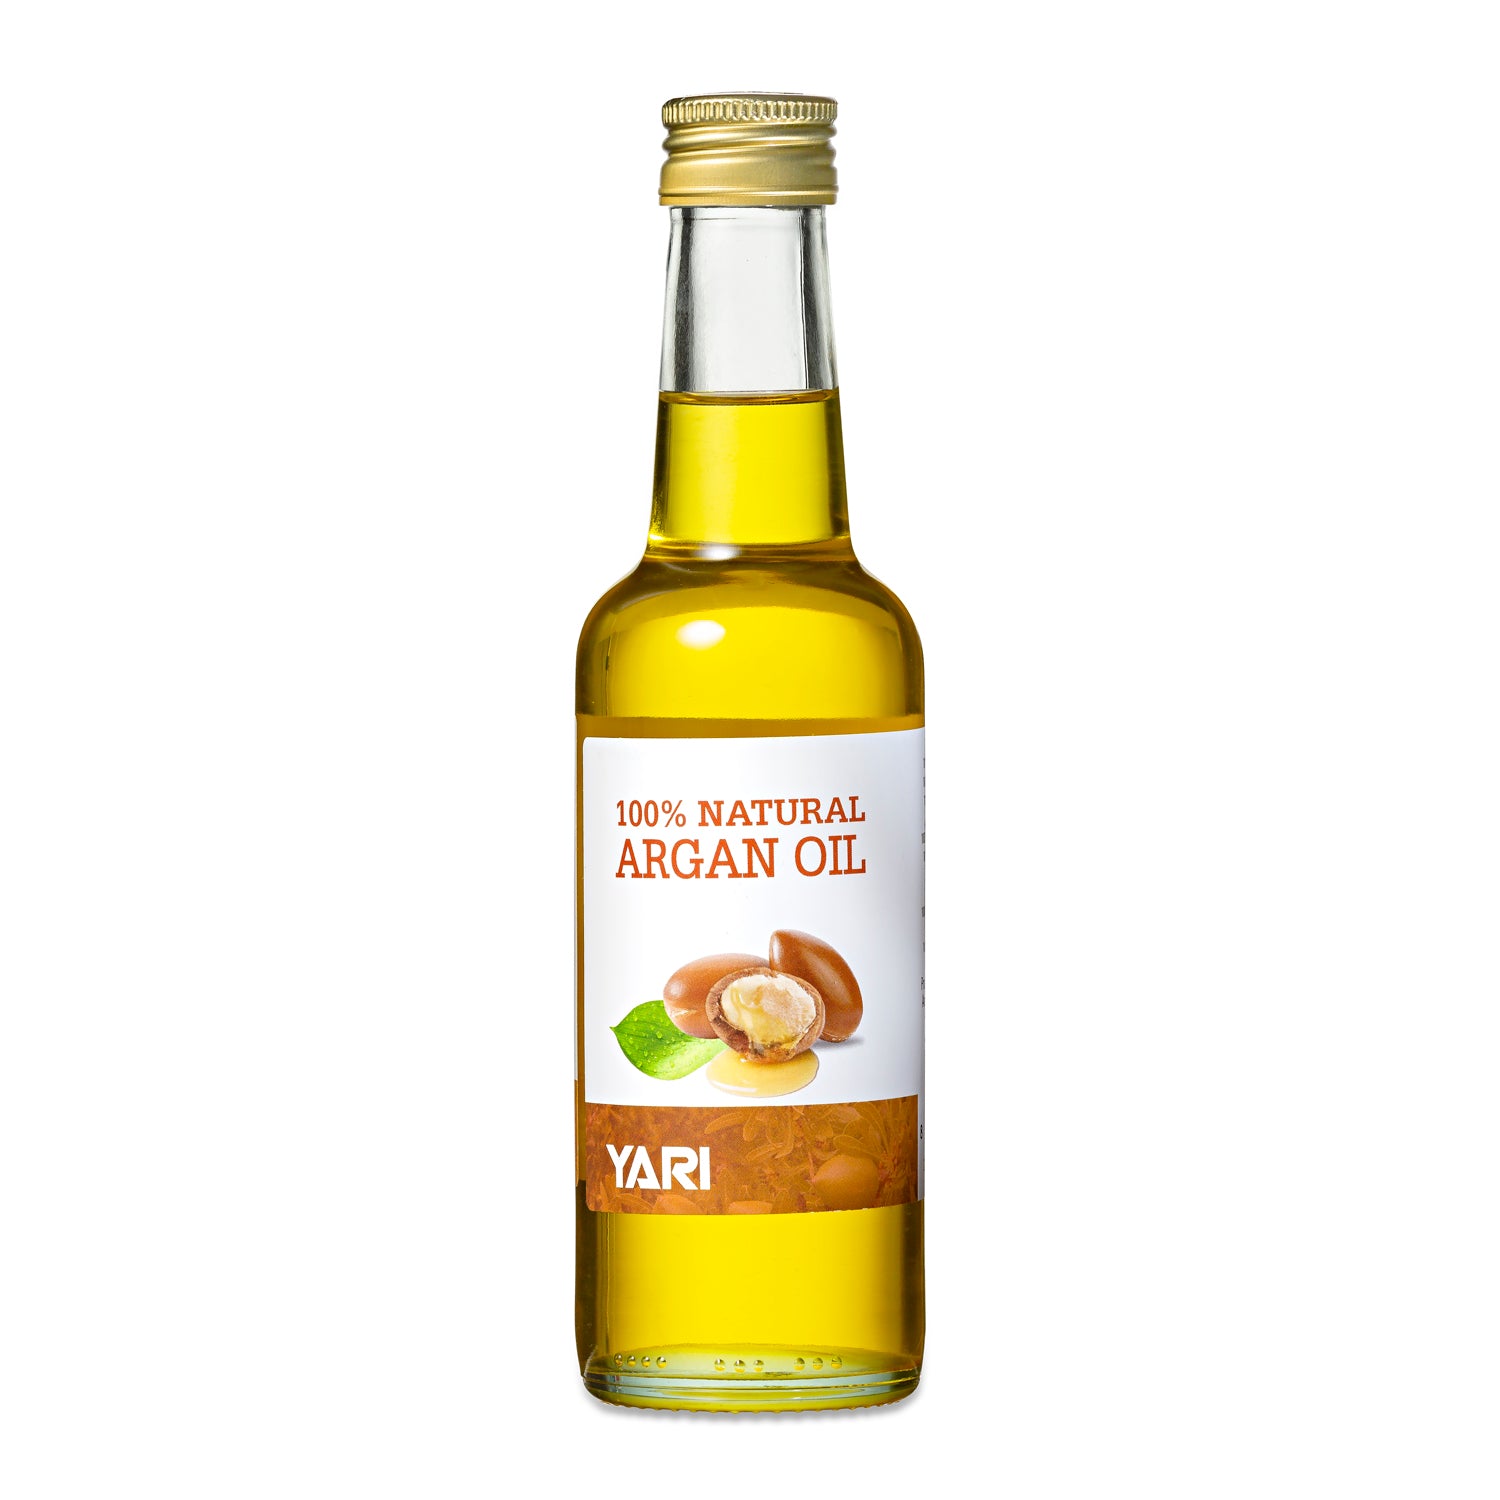 Yari - 100% Natural Argan Oil 250ml